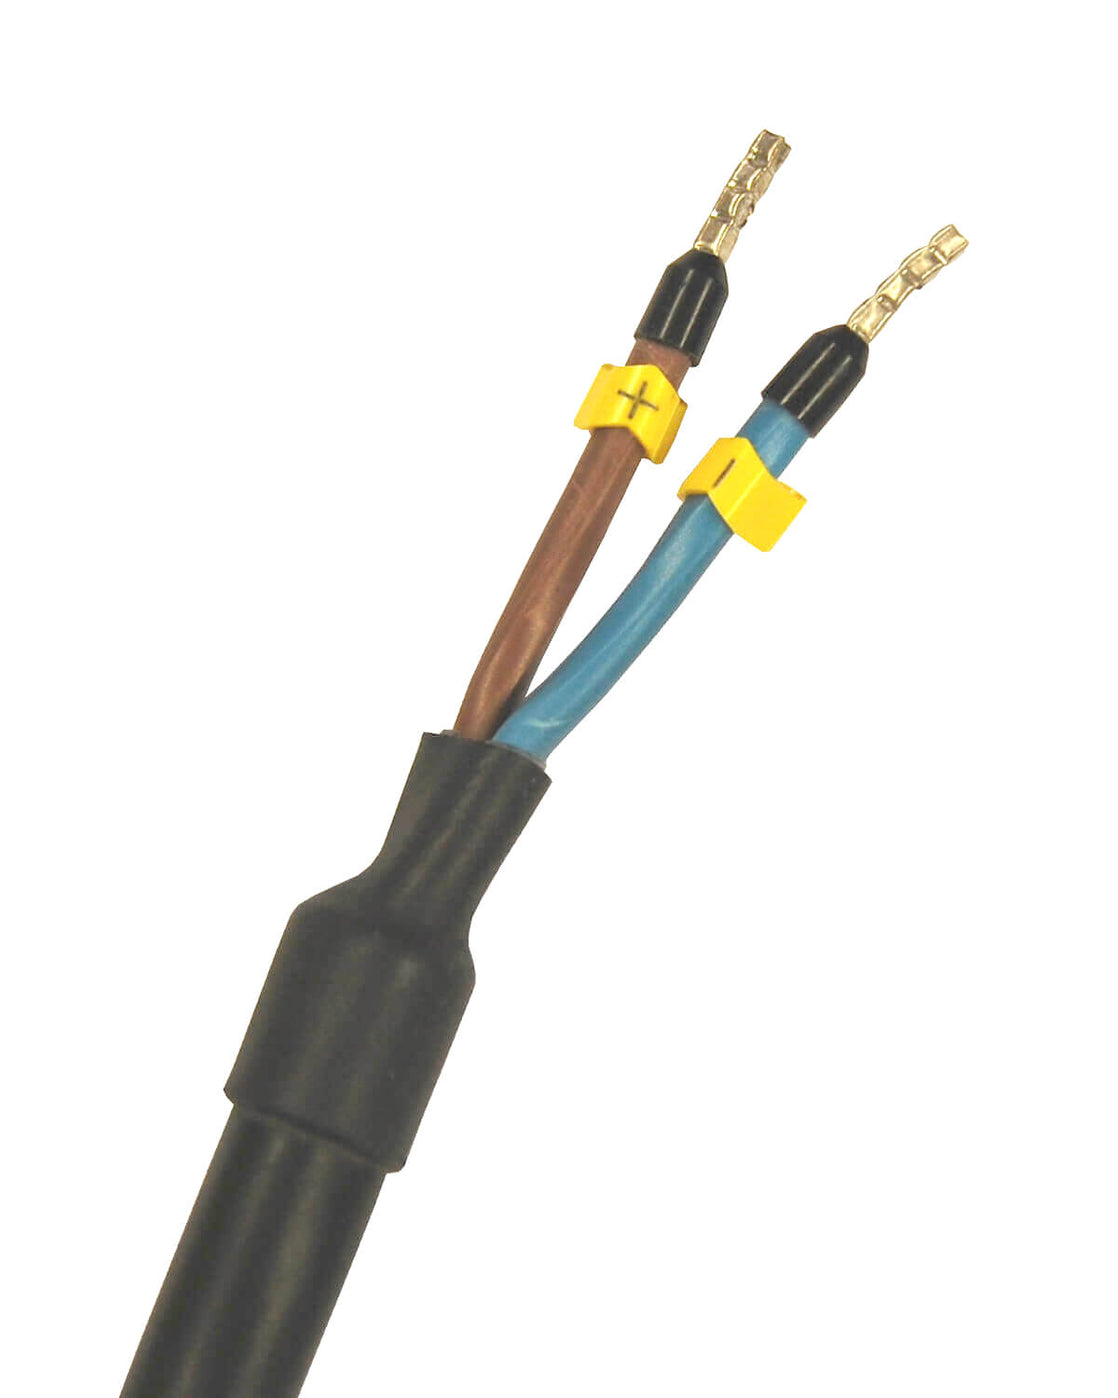 Ein schwarz-gelbes Kabel zur Trinkwasseraufbereitung mit zwei Adern, hergestellt von der PURION GmbH mit der Bezeichnung PURION 500 12 V/24 V DC Basic.